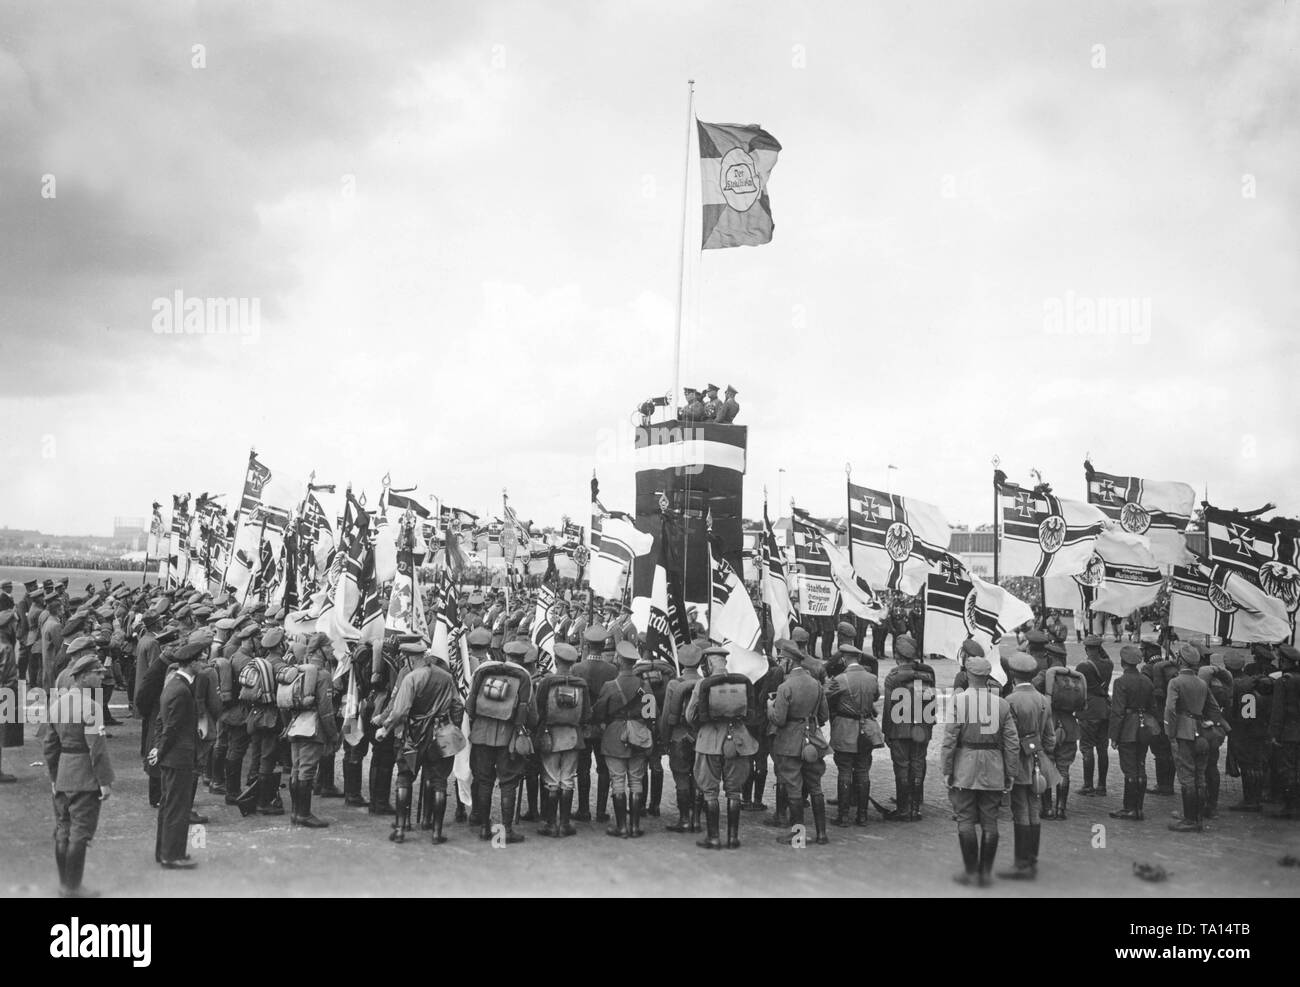 Als Teil des 13 Reichsfrontsoldatstag (Frontline Soldaten' Day), die zweite Vorsitzende der Stahlhlem, Theodor Duesterberg, widmet die Reichskriegsflaggen (Imperial war Flags) von 40 neu gegründeten lokalen Gruppen. Auf einem Fahnenmast ist eine Fahne mit dem Logo der Stahlhelm. Stockfoto